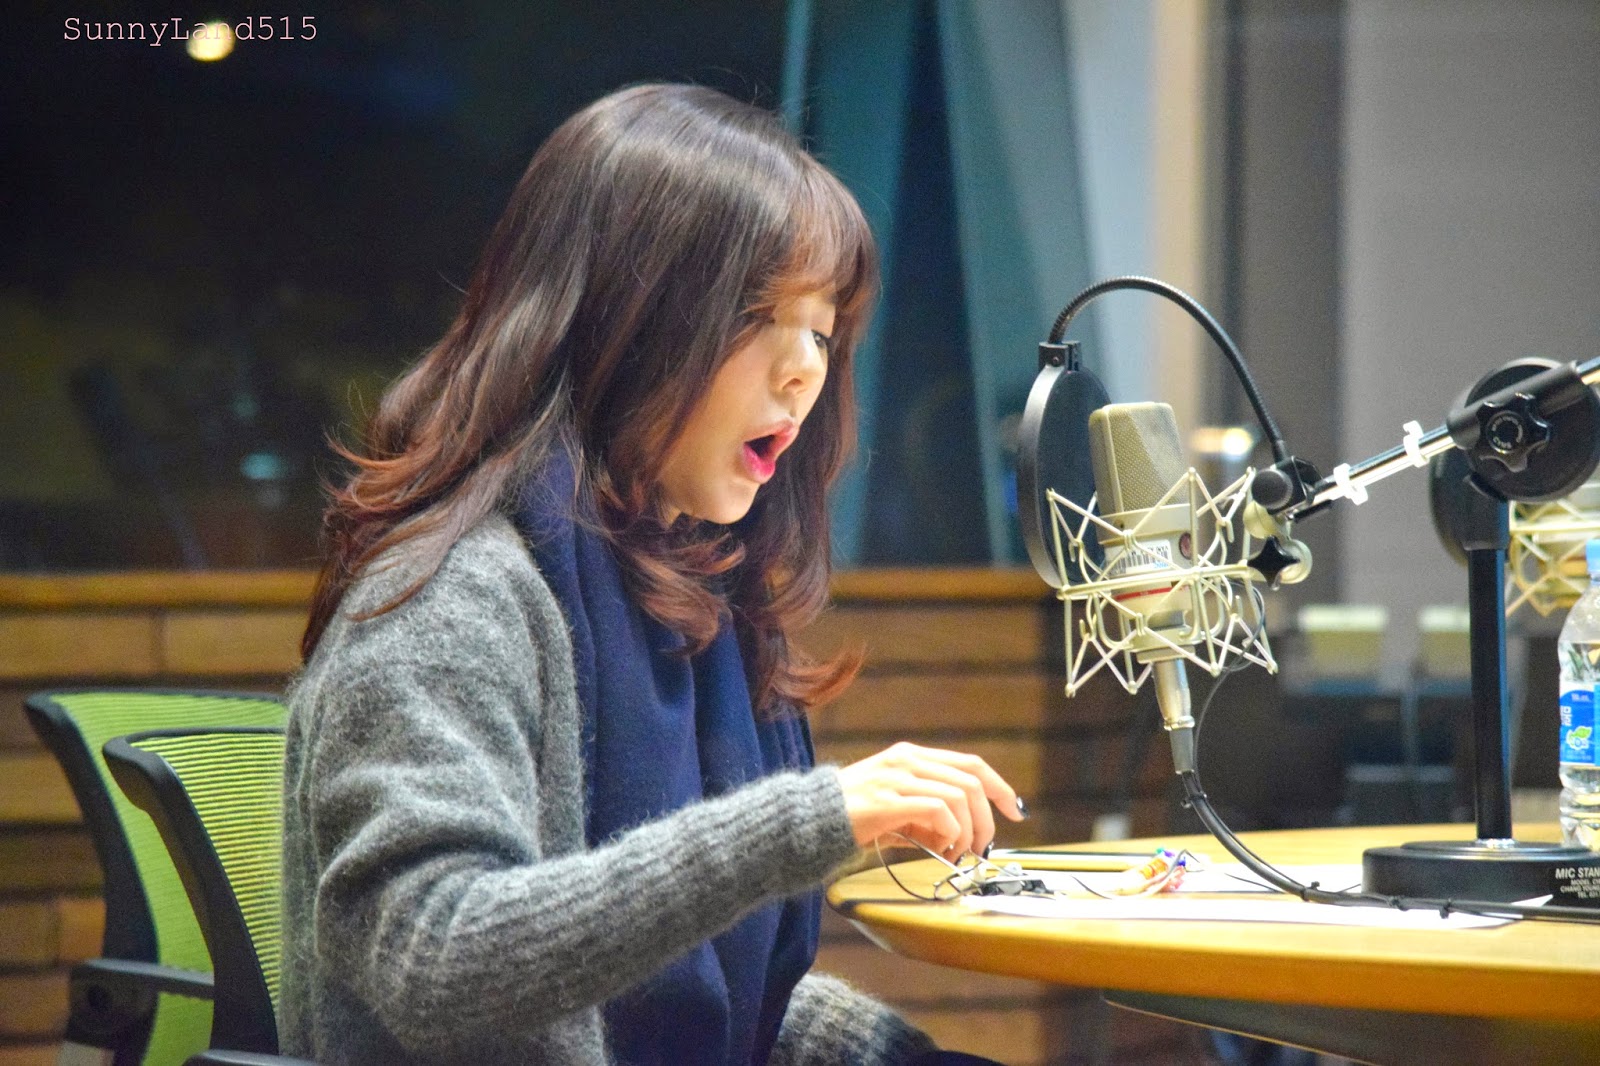 [OTHER][06-02-2015]Hình ảnh mới nhất từ DJ Sunny tại Radio MBC FM4U - "FM Date" - Page 10 DSC_0226_Fotor